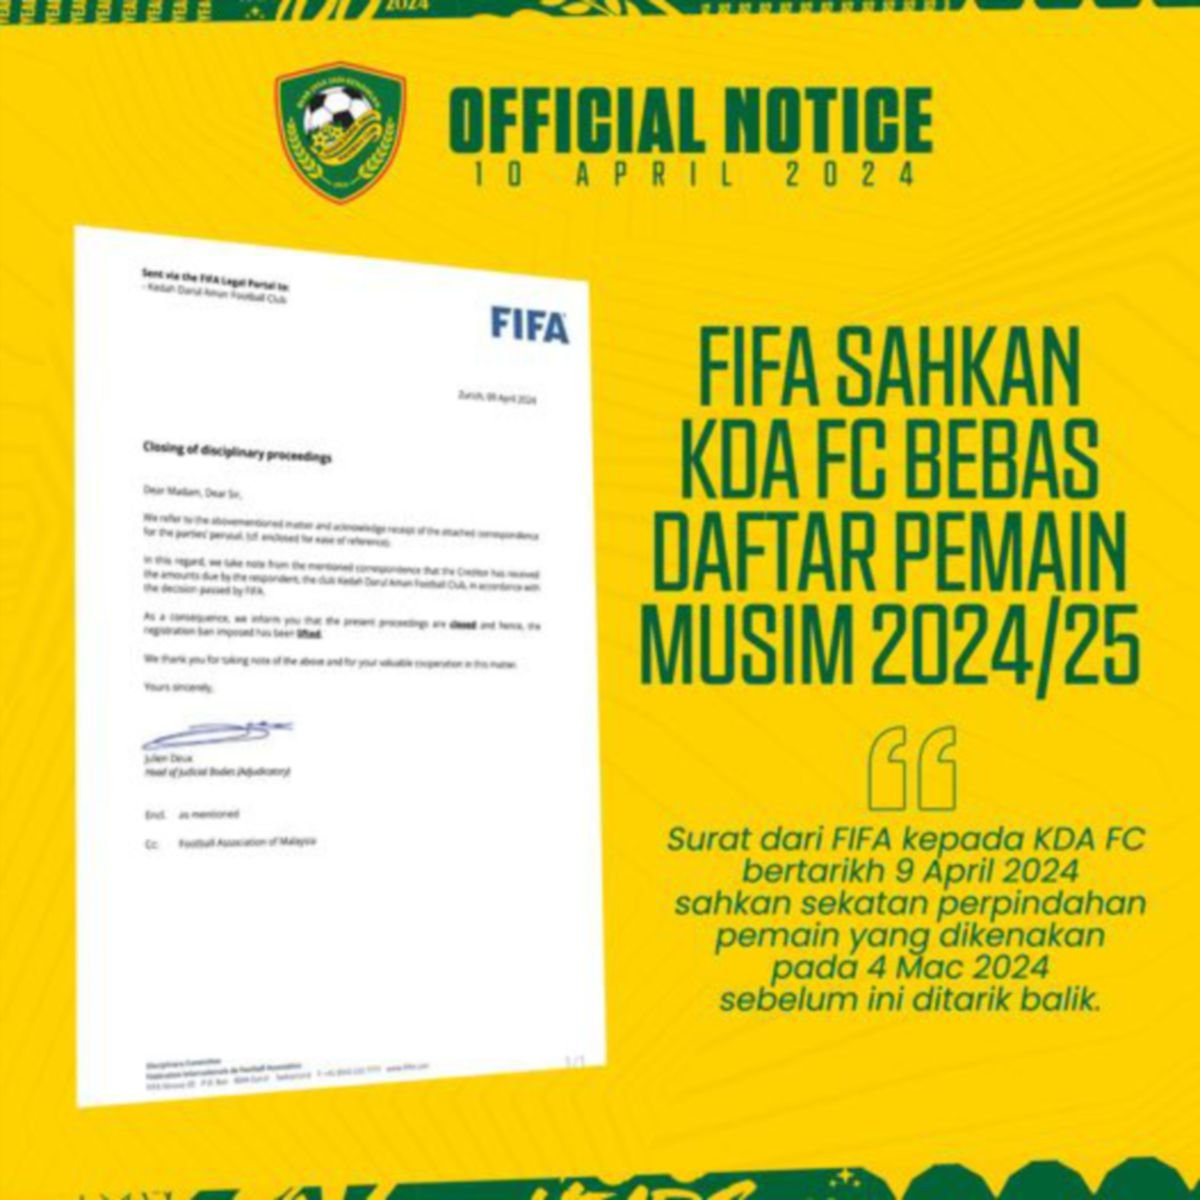 KDA FC disahkan bebas sekatan Fifa. FOTO FB KDA FC